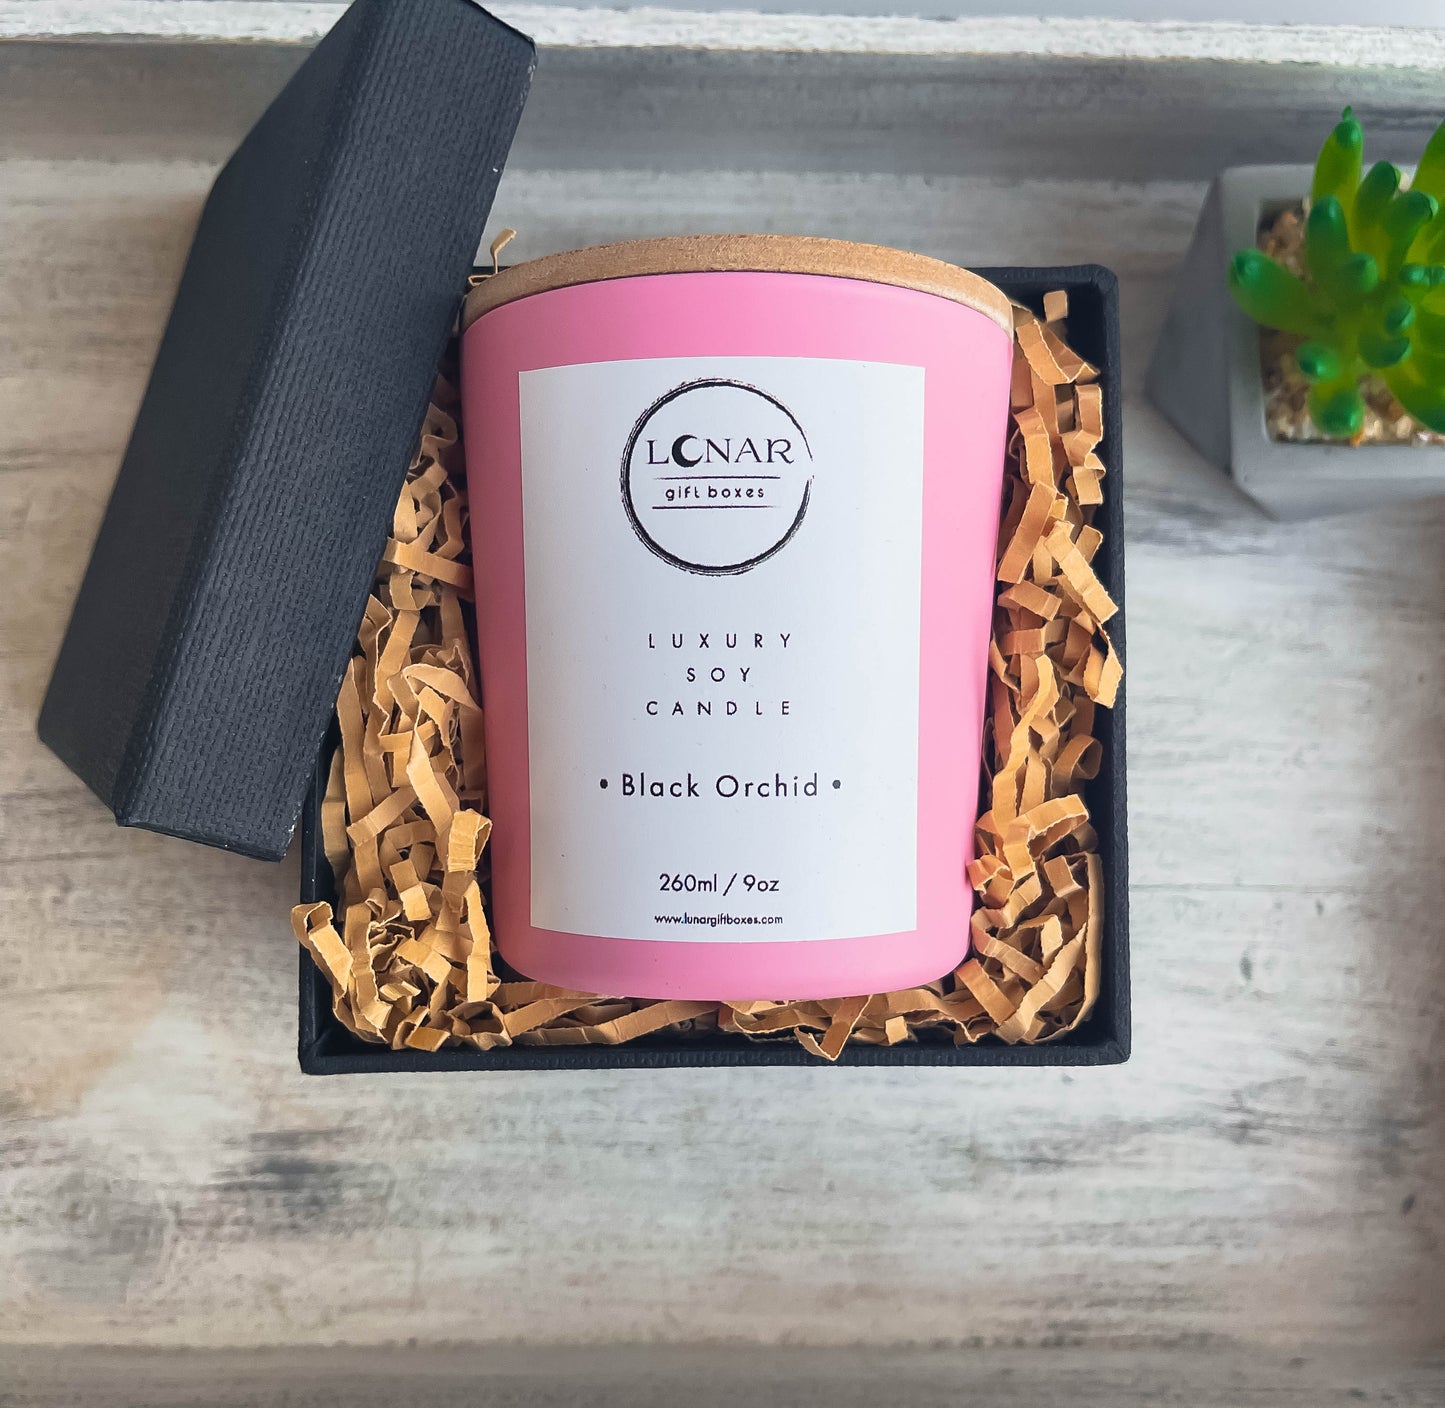 αρωματικό κερί σόγιας με ξυλινο φυτίλι ξύλινο καπακι σε ροζ γυαλινο δοχείο  